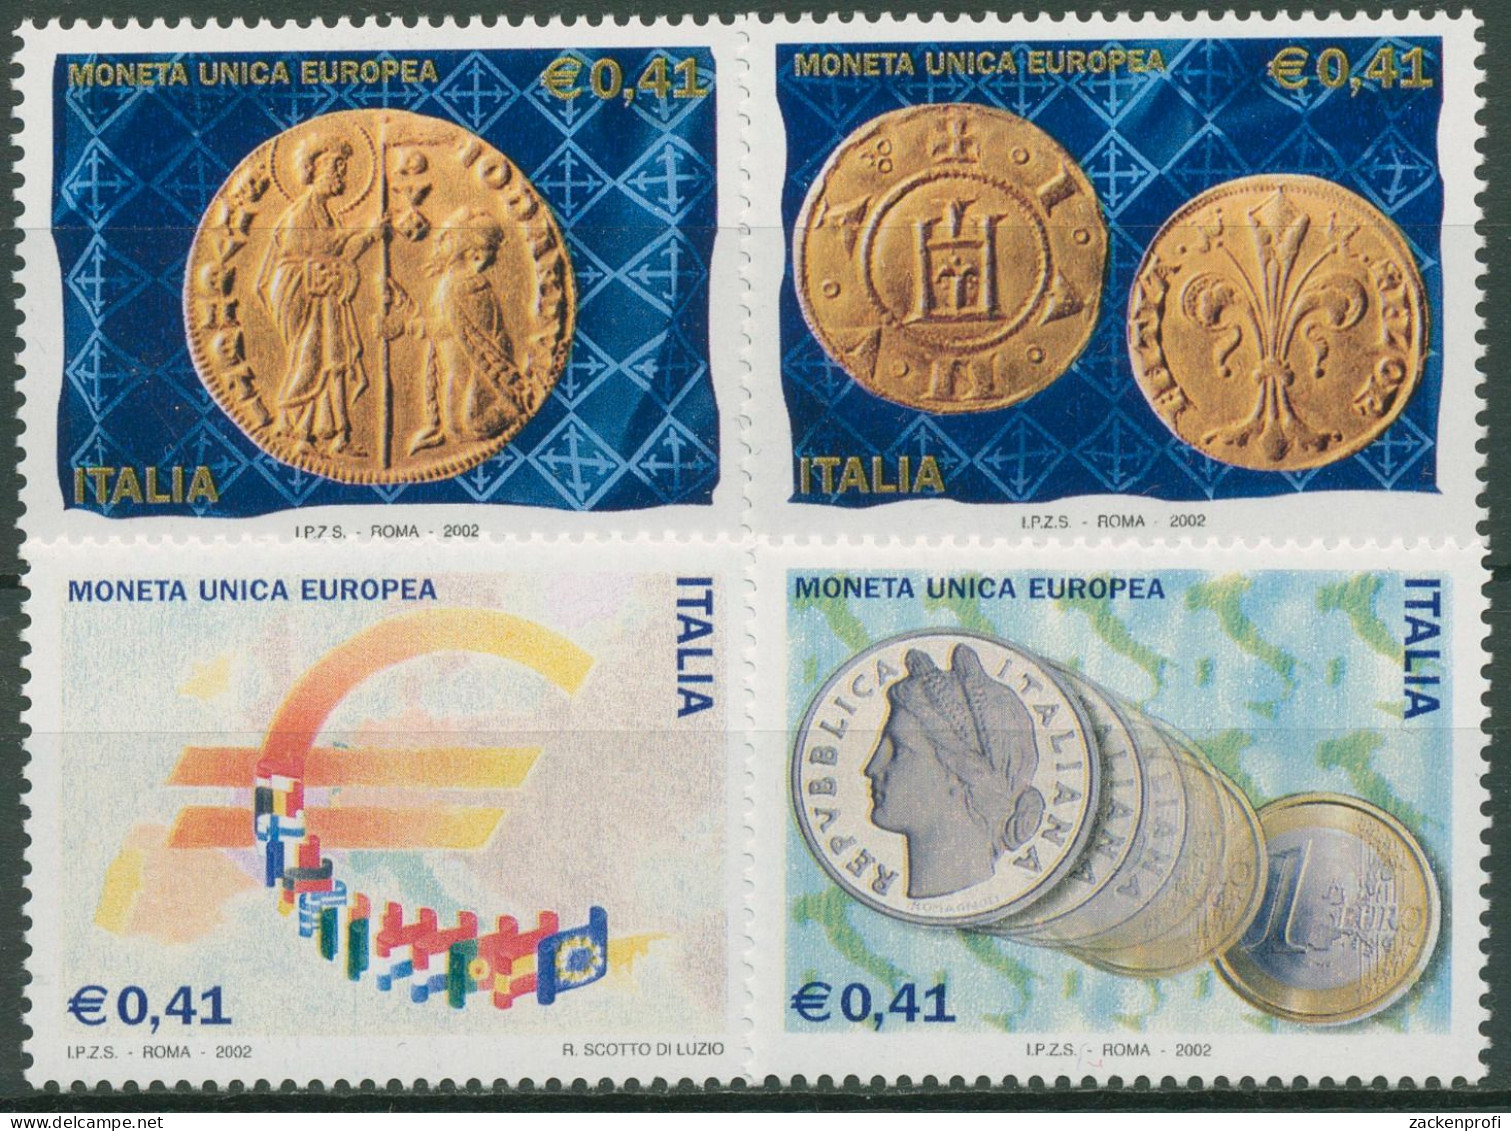 Italien 2002 Euromünzen Eurobanknoten 2800/03 Postfrisch - 2001-10: Mint/hinged